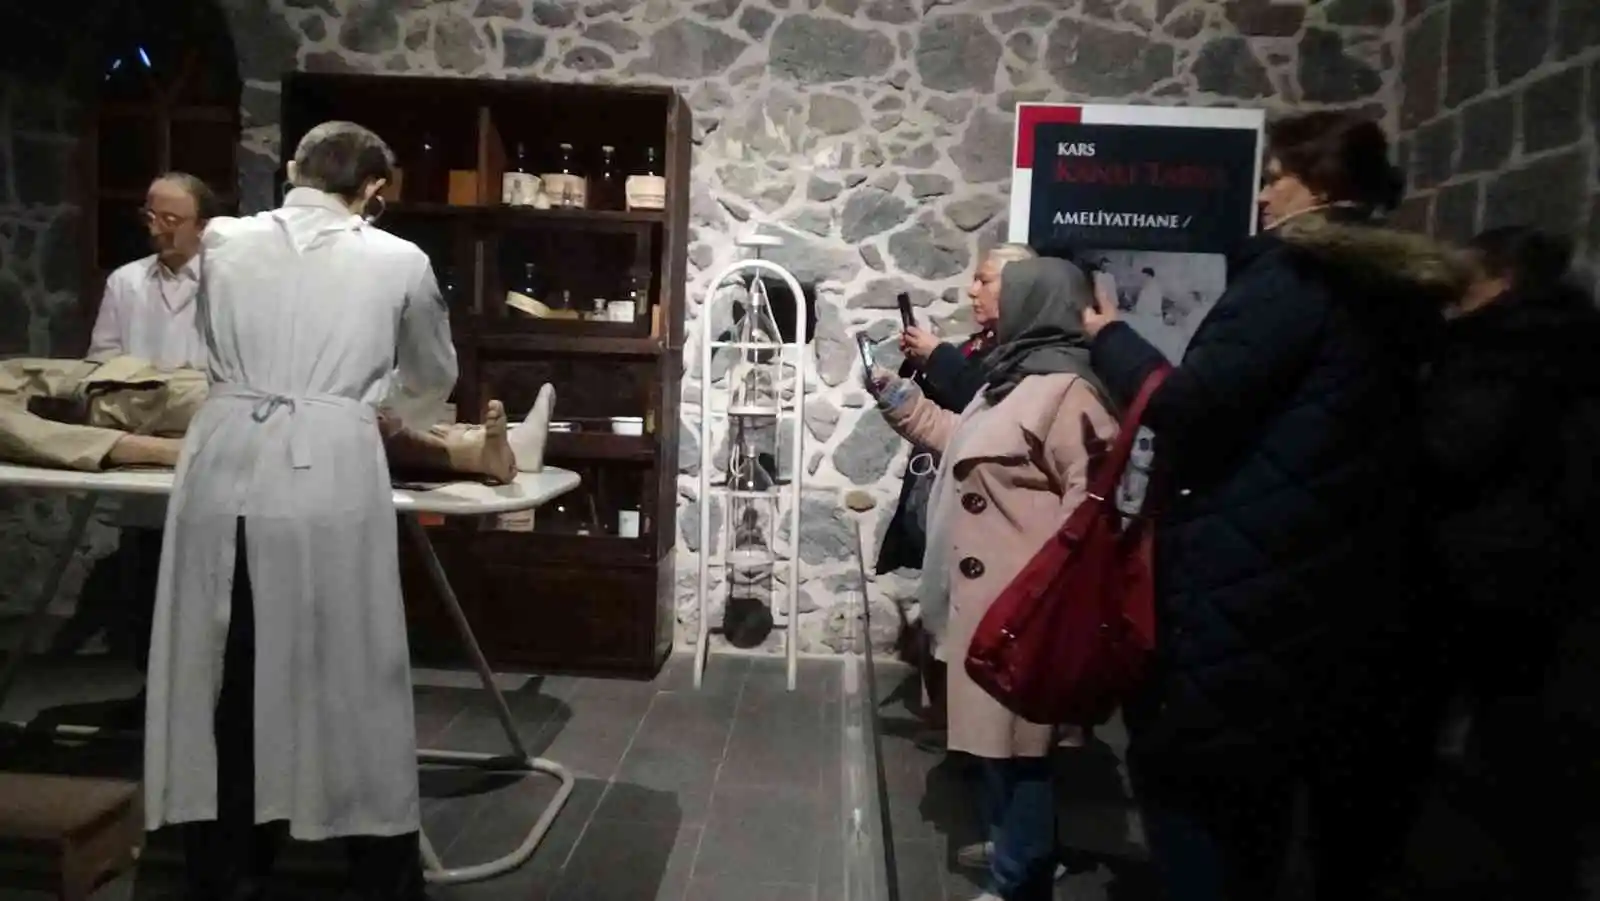 Kars’taki interaktif müze yoğun ilgi görüyor
